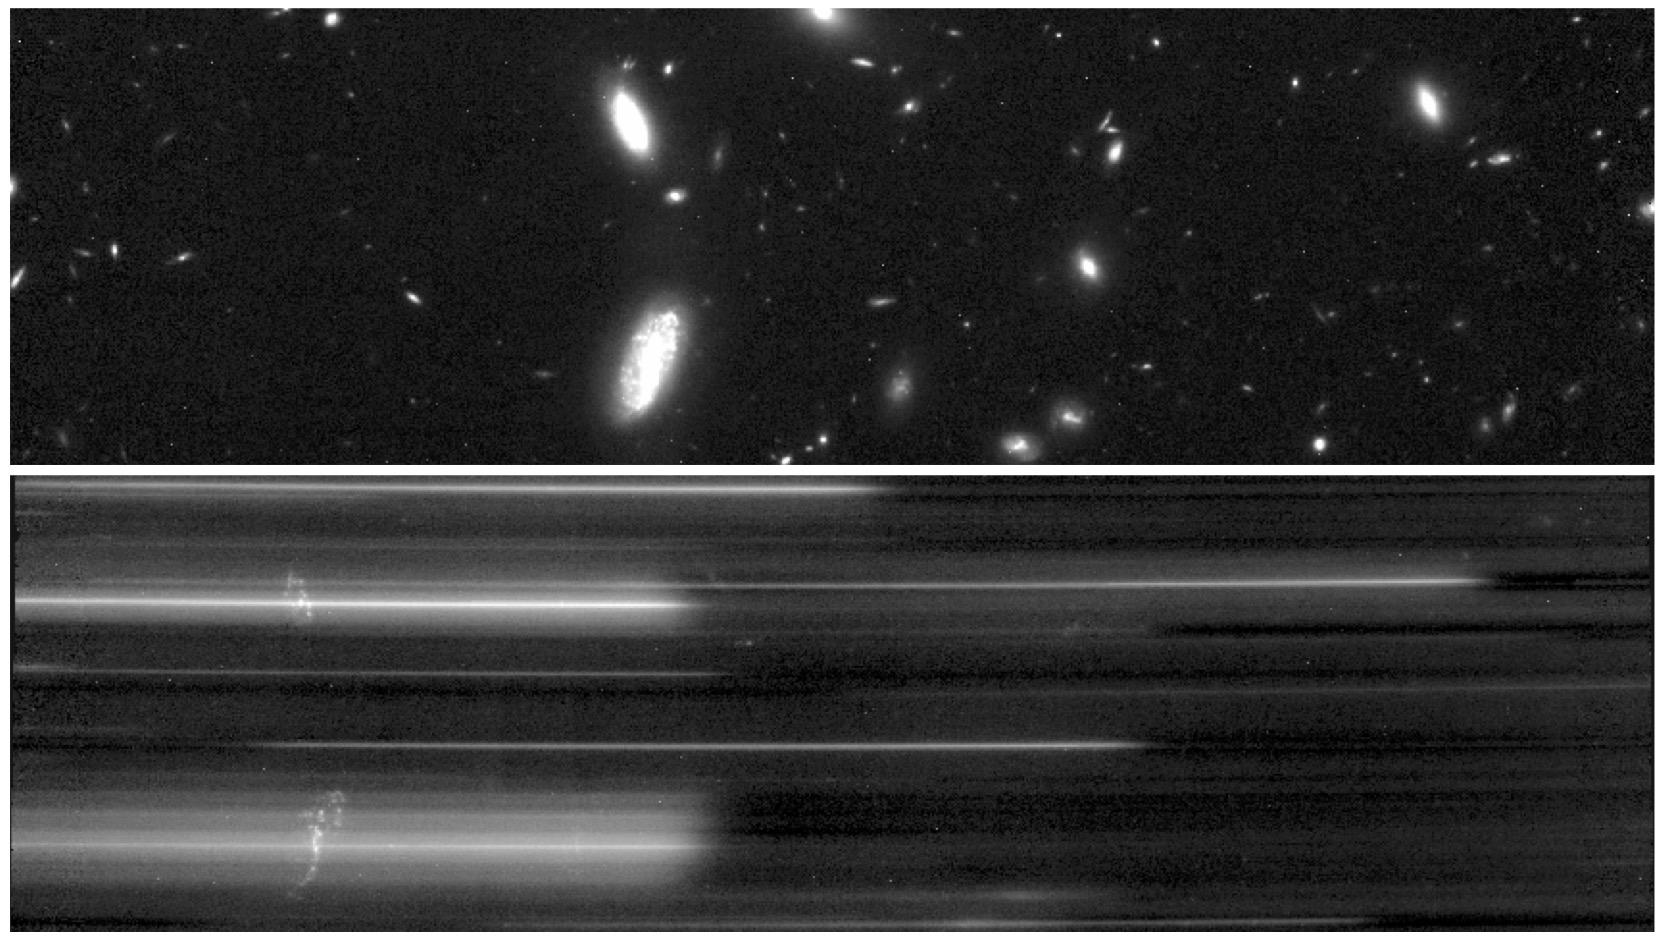 La galaxie en spirale (vers le milieu gauche de l'image du haut) et son spectre (image du bas). Les petites taches réparties sur les lignes, vers la gauche, représentent du gaz présent dans la galaxie (ici, de l'hydrogène). [JWST/NASA, ESA, CSA - Pascal Oesch, FRESCO, UNIGE]